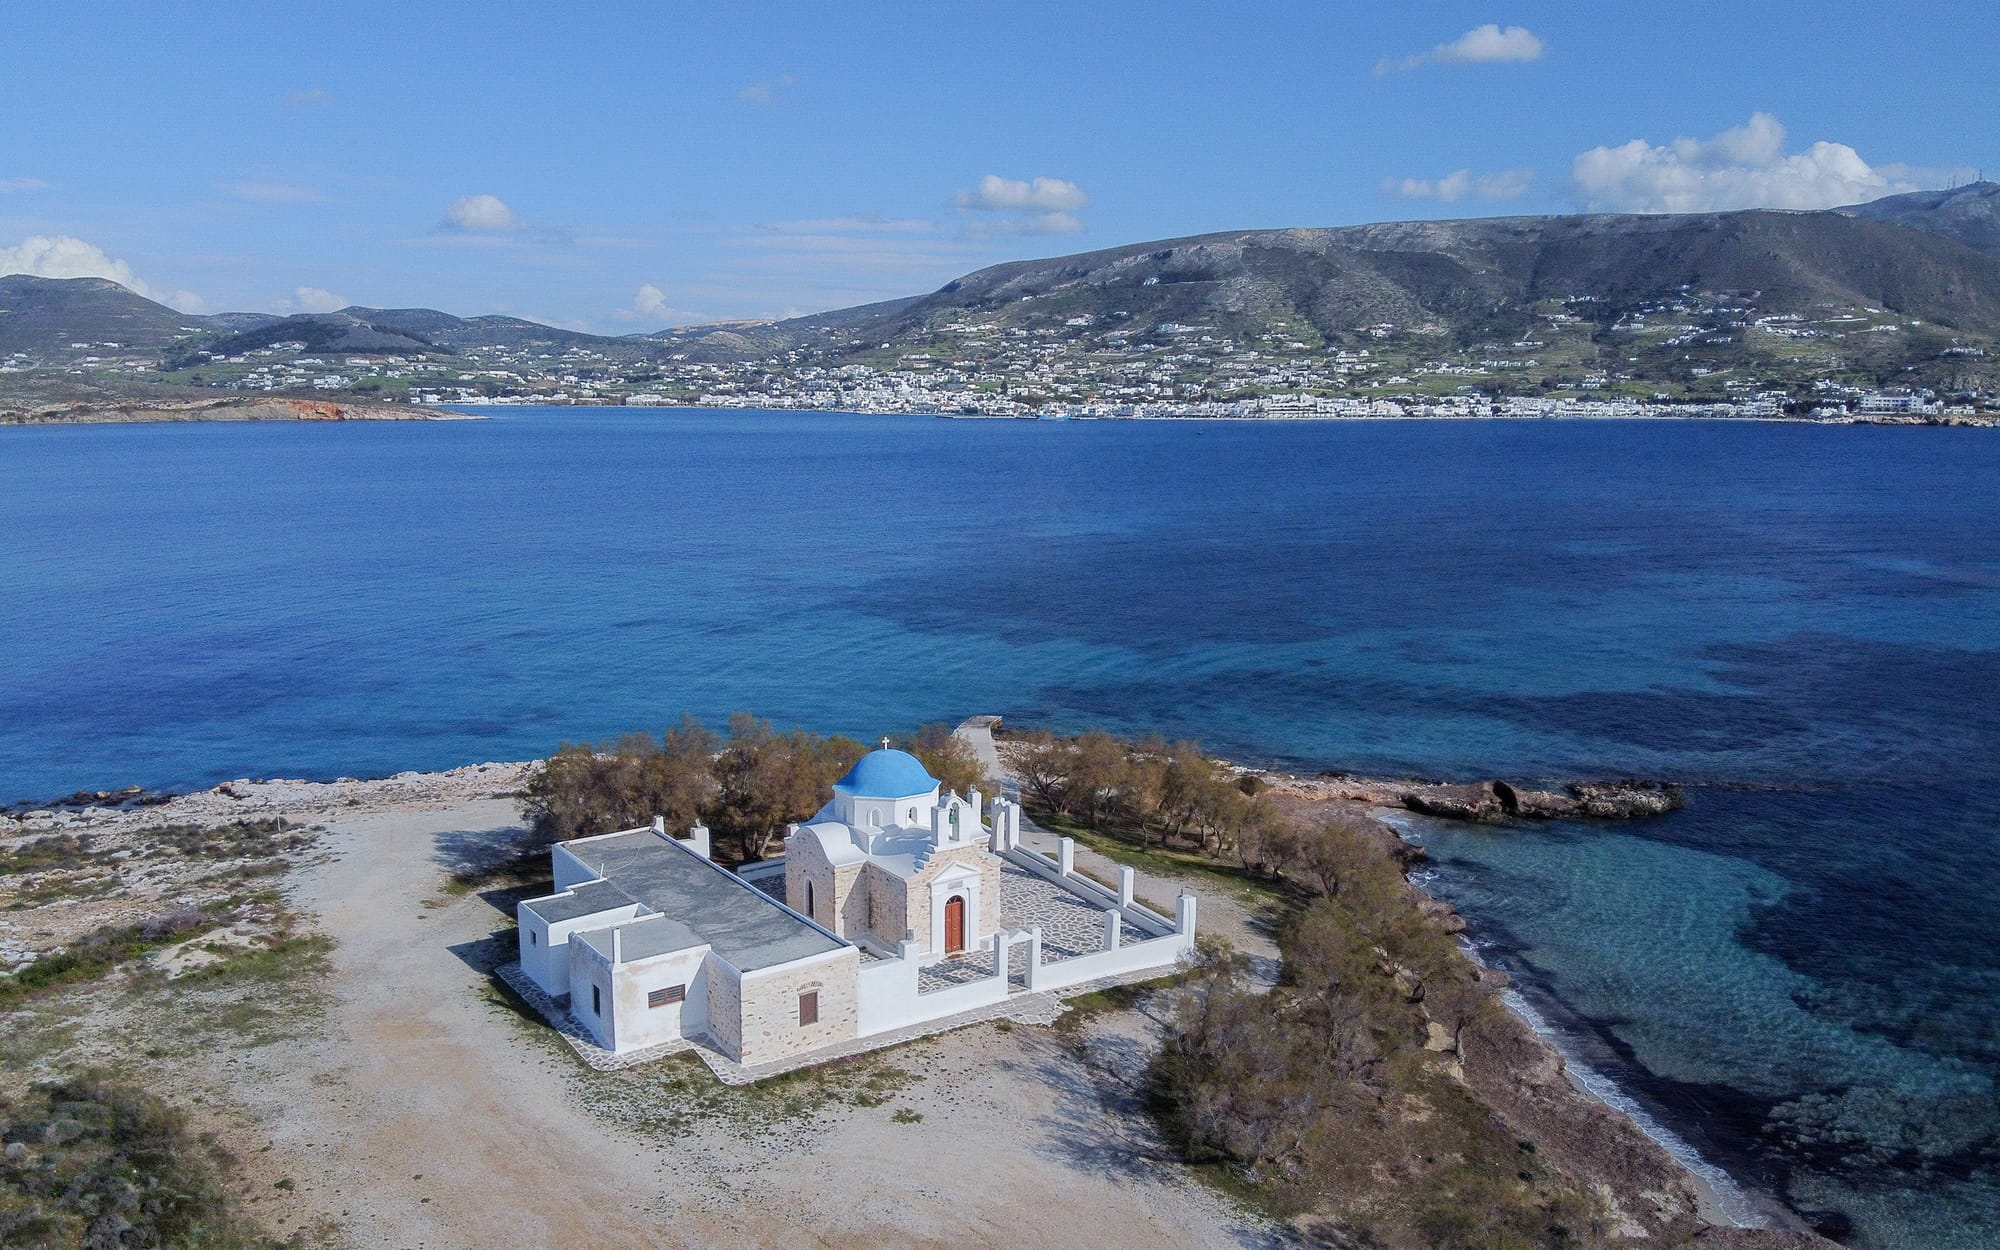 The Church of Agios Fokas